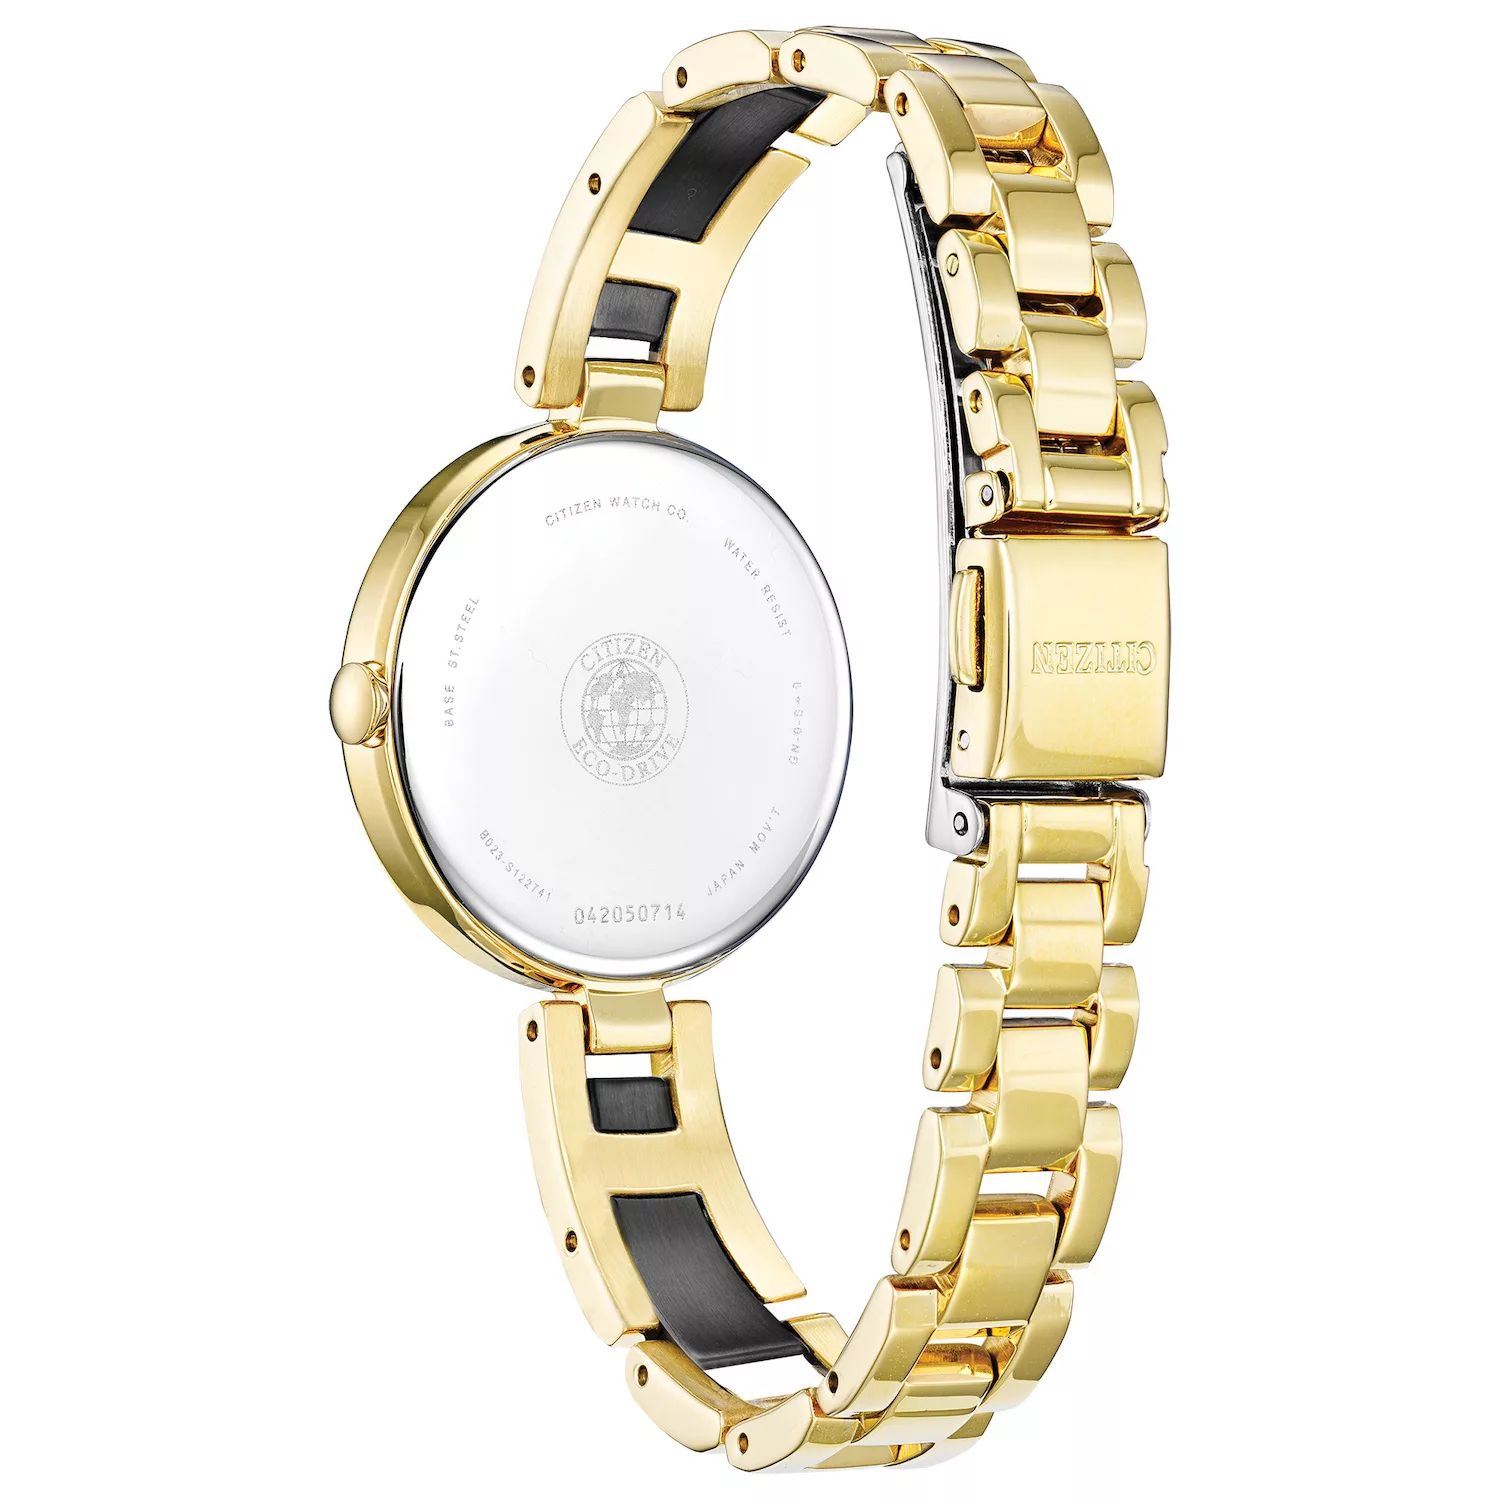 Женские часы-браслет Eco-Drive Axiom — EX1539-57E Citizen цена и фото